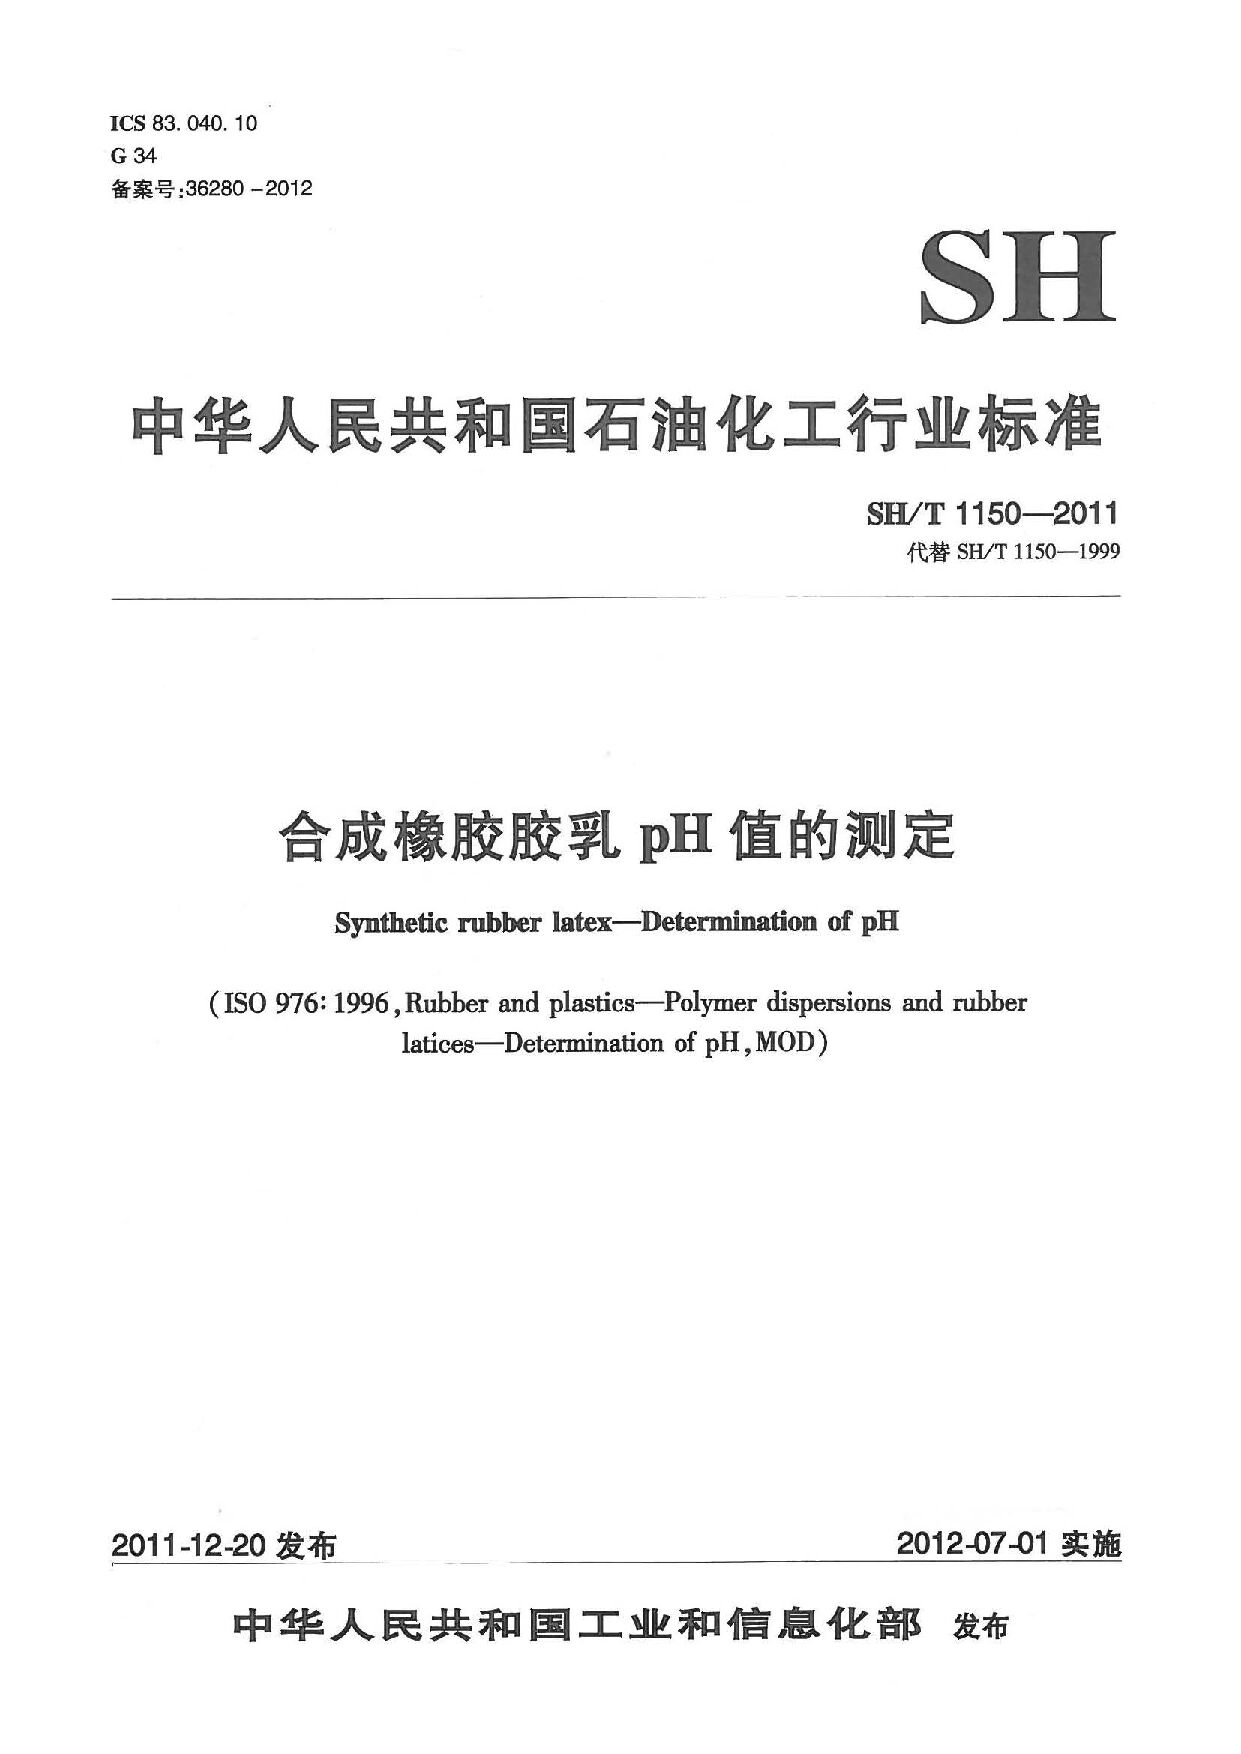 SH/T 1150-2011